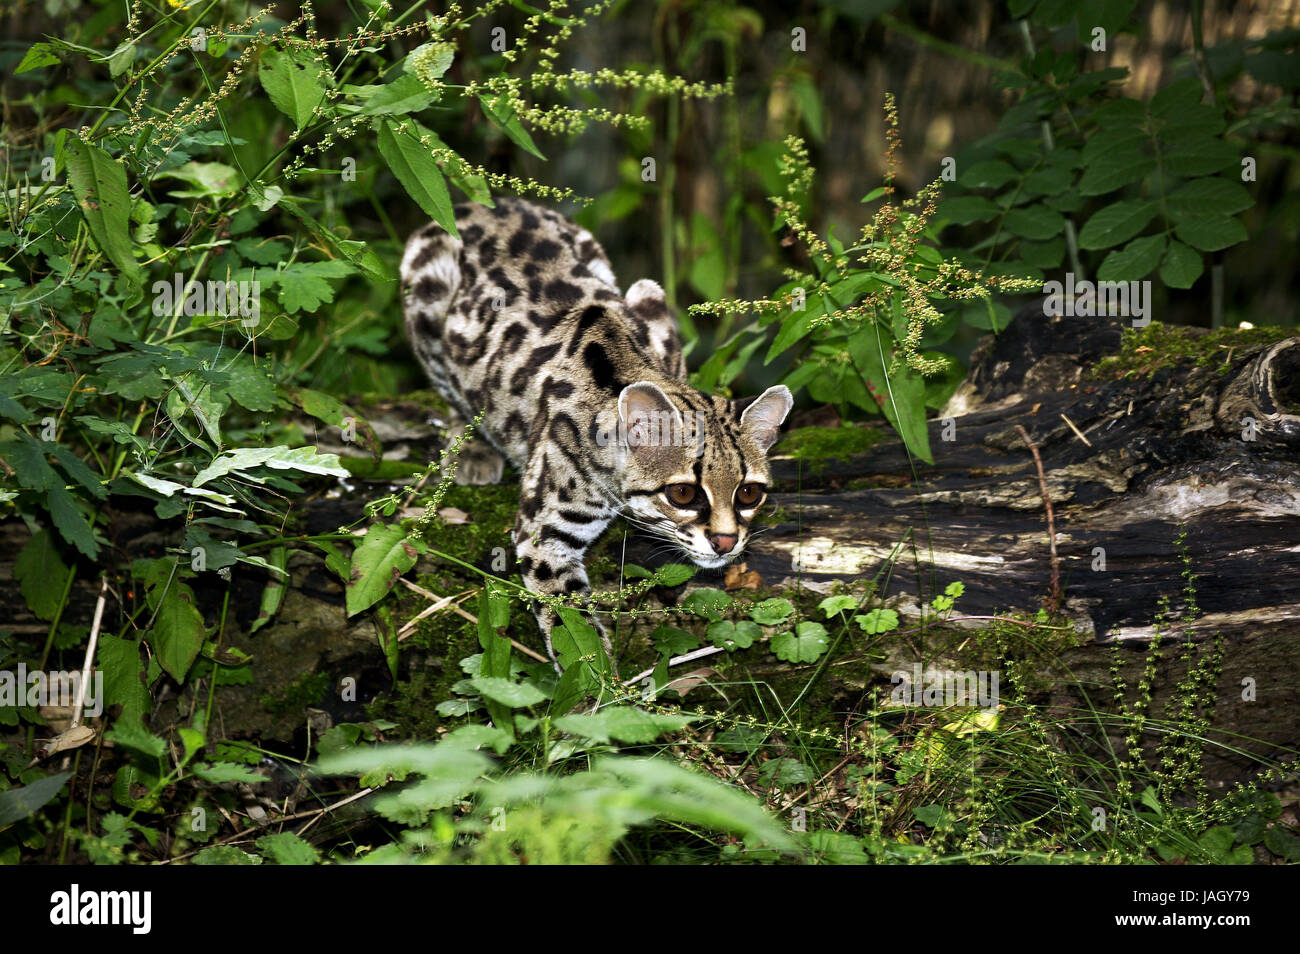 Long Tail cat,Leopardus wiedi,animal adulto, Foto de stock